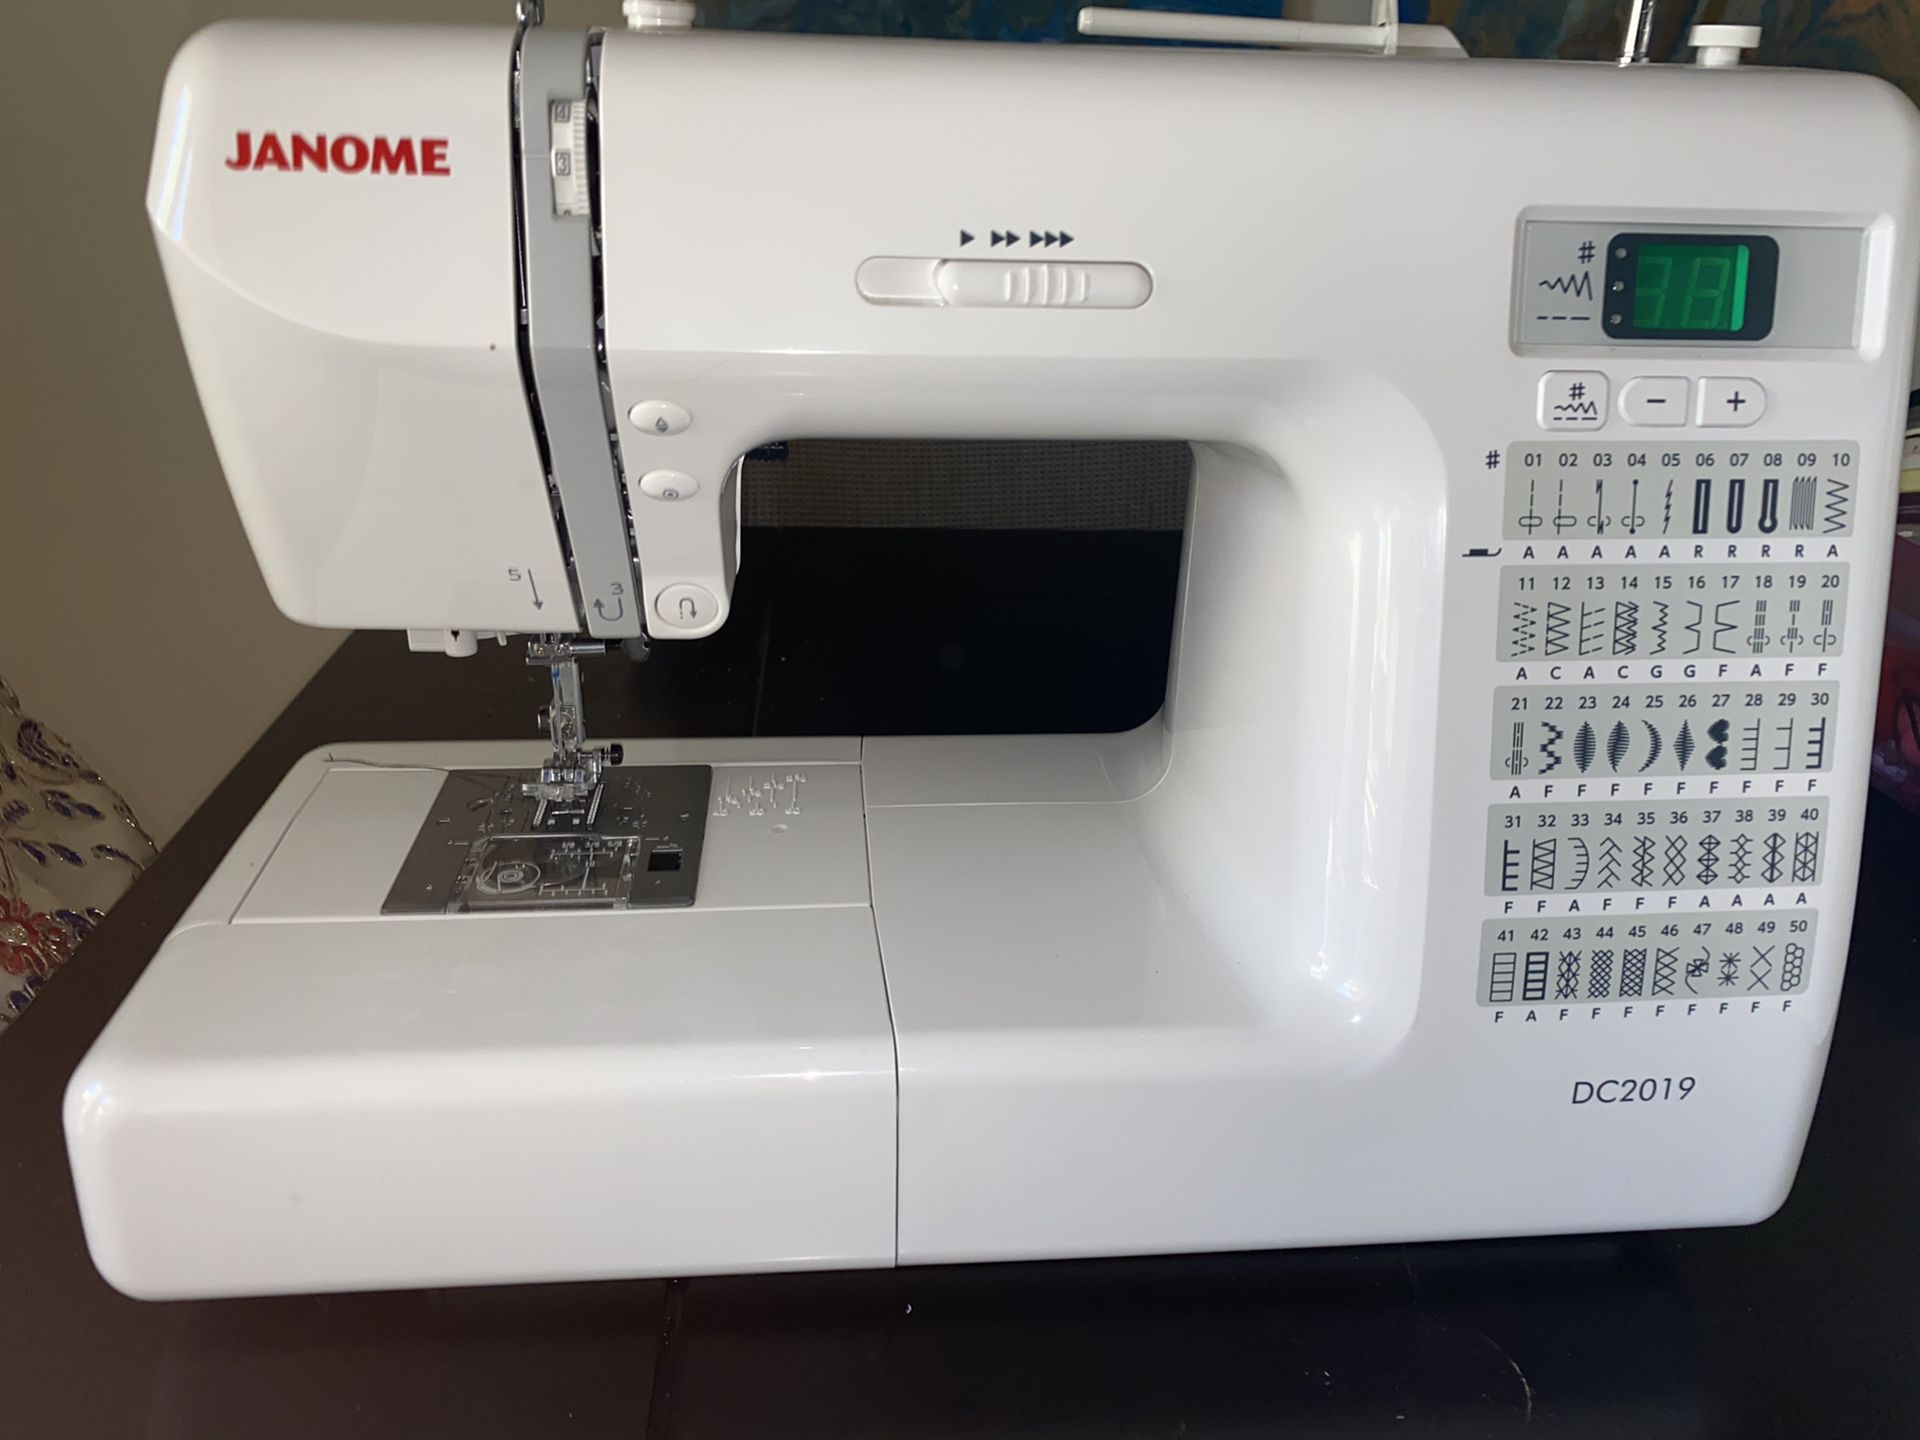 Janome DC2019 (Sewing machine)